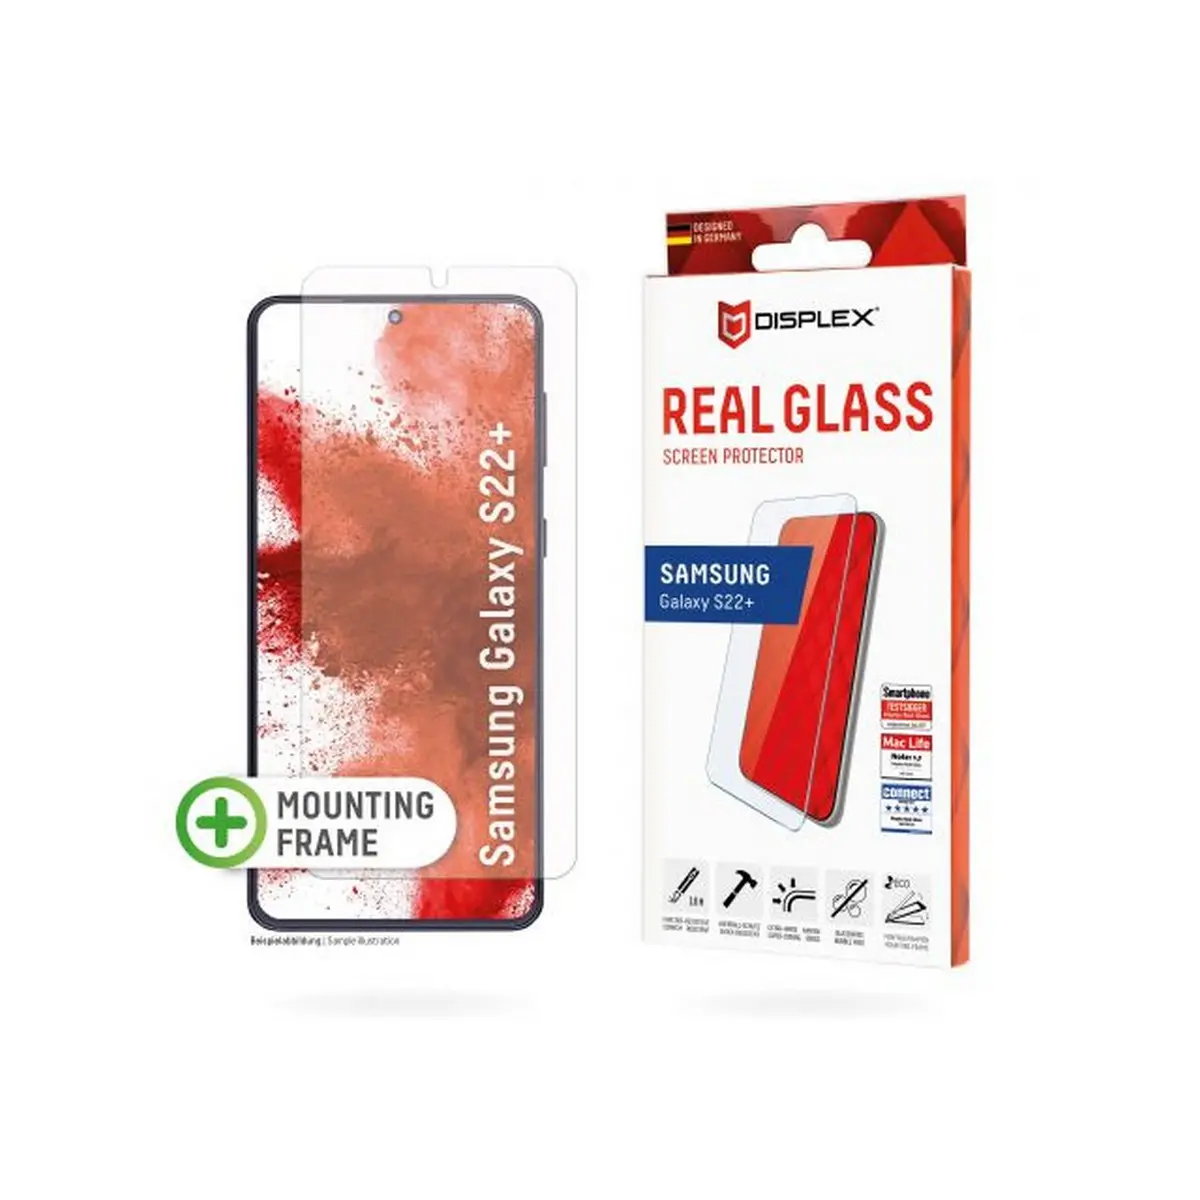 DISPLEX zaštitno staklo Real Glass 2D za Samsung Galaxy S22+, prozirna + maskica image